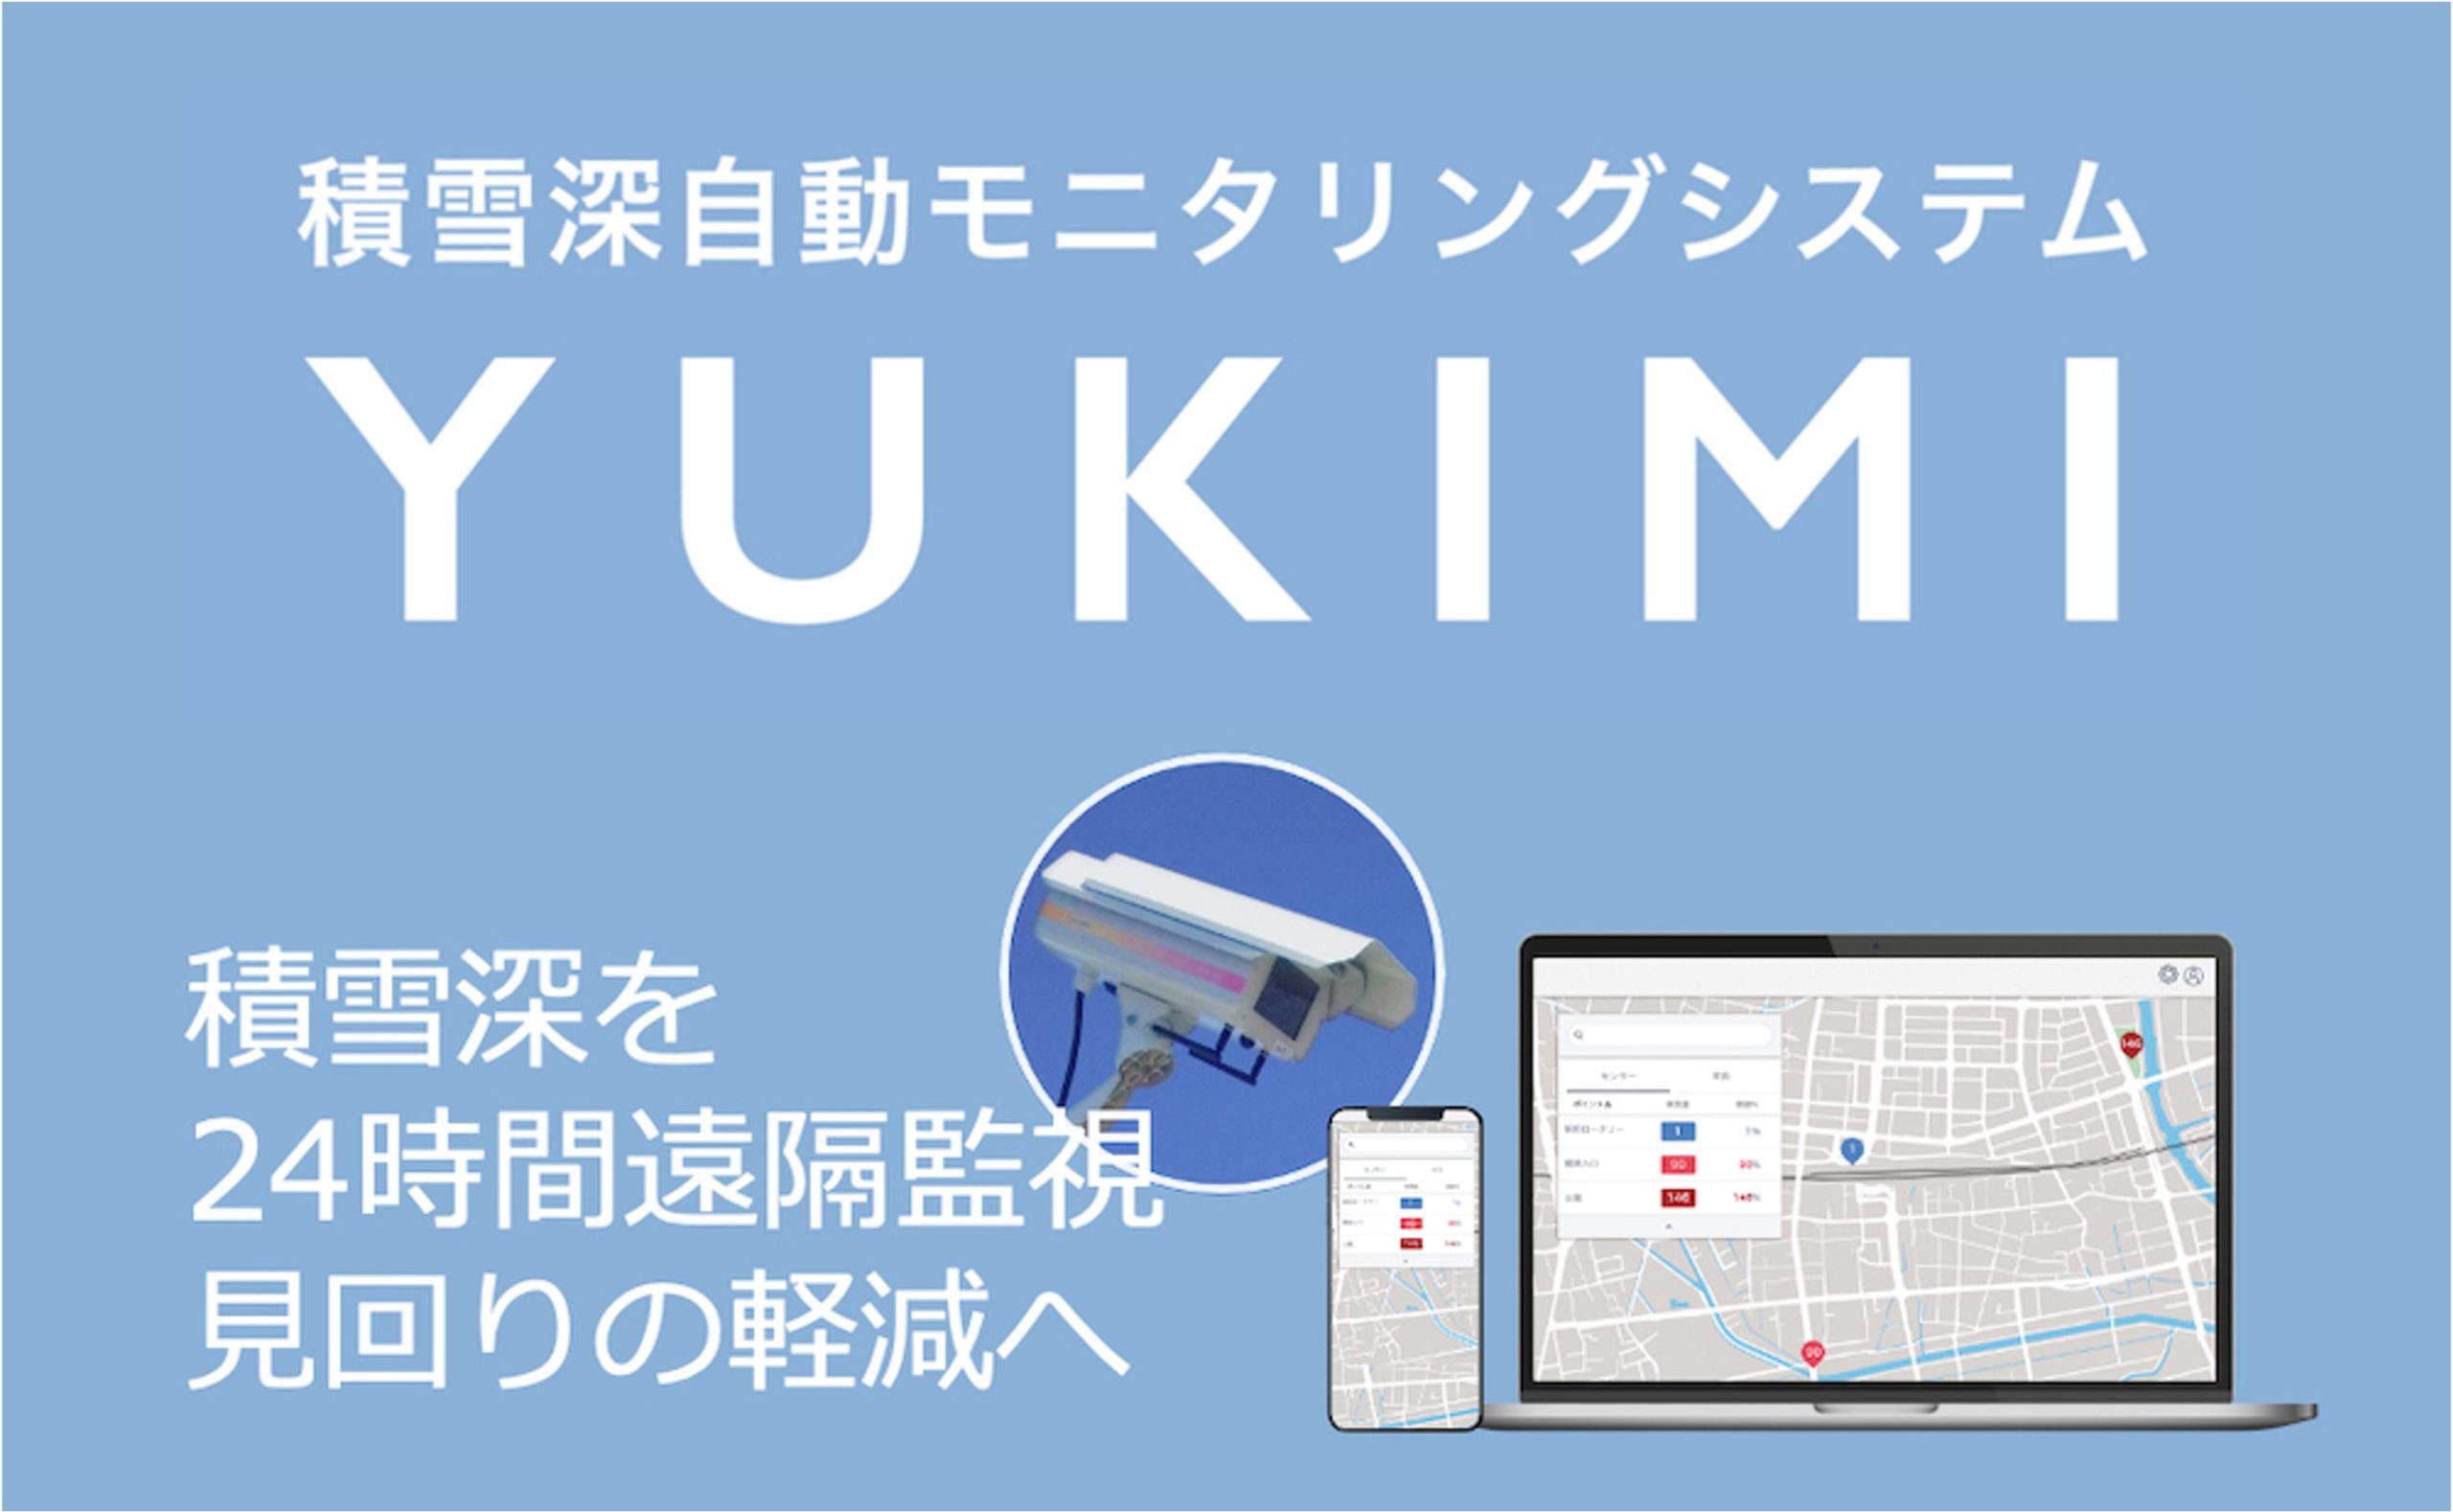 山形県、積雪深自動モニタリングシステム「YUKIMI」を導入[ニュース]